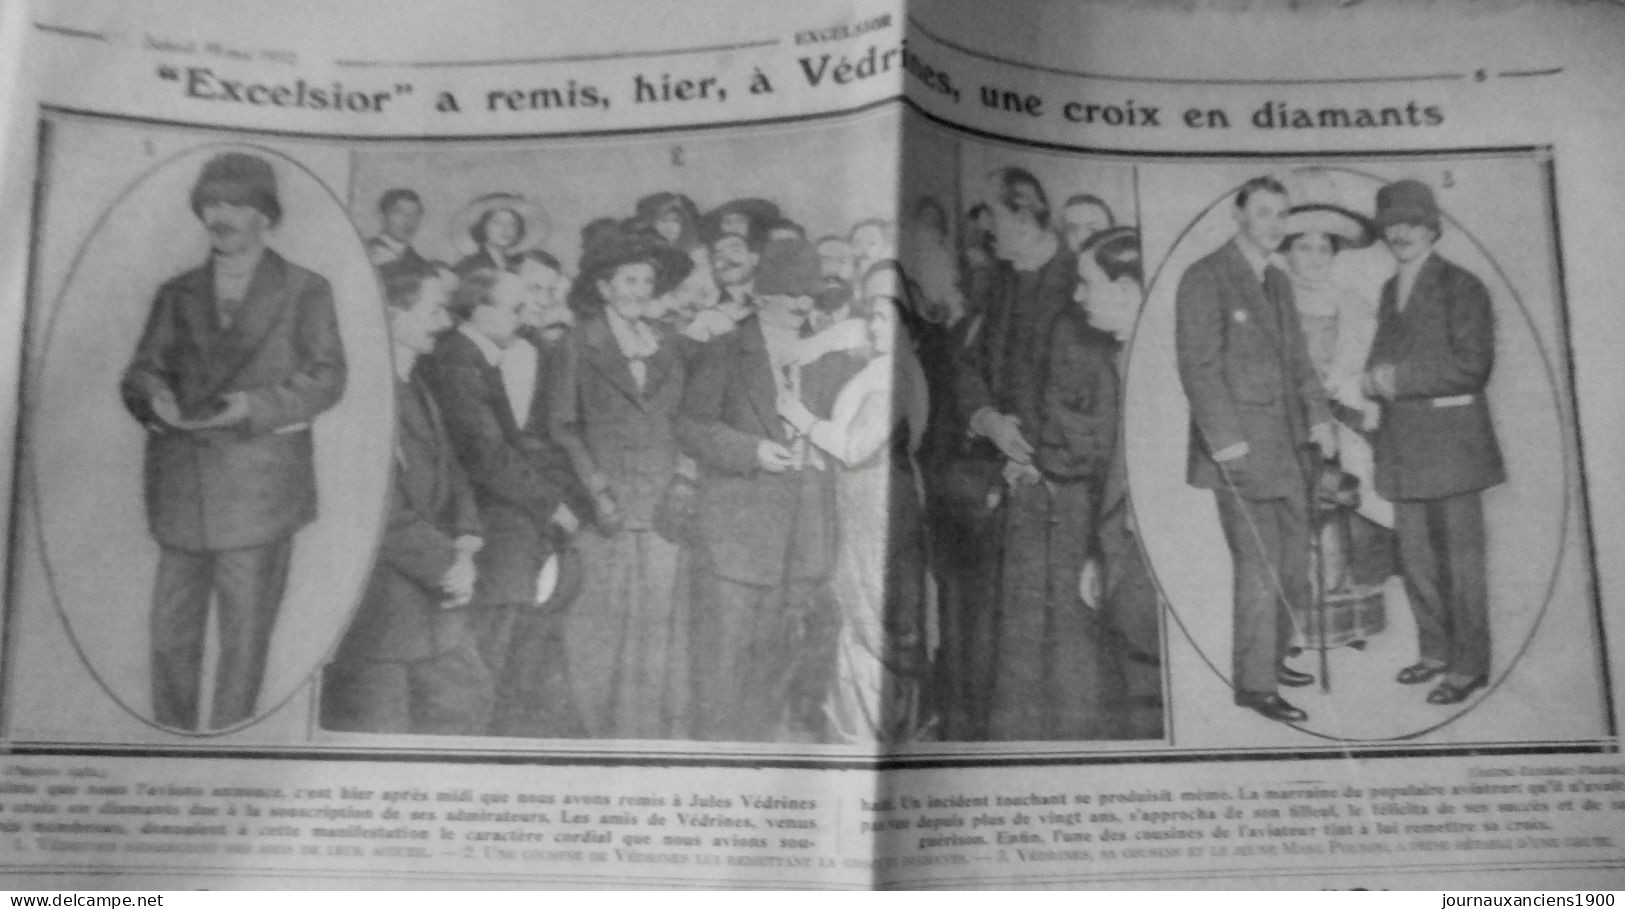 1912 EXCELSIOR ARTICLE DE PRESSE AVIATION VEDRINES CROIX DIAMANTS 1 JOURNA ANCIEN - Diapositivas De Vidrio